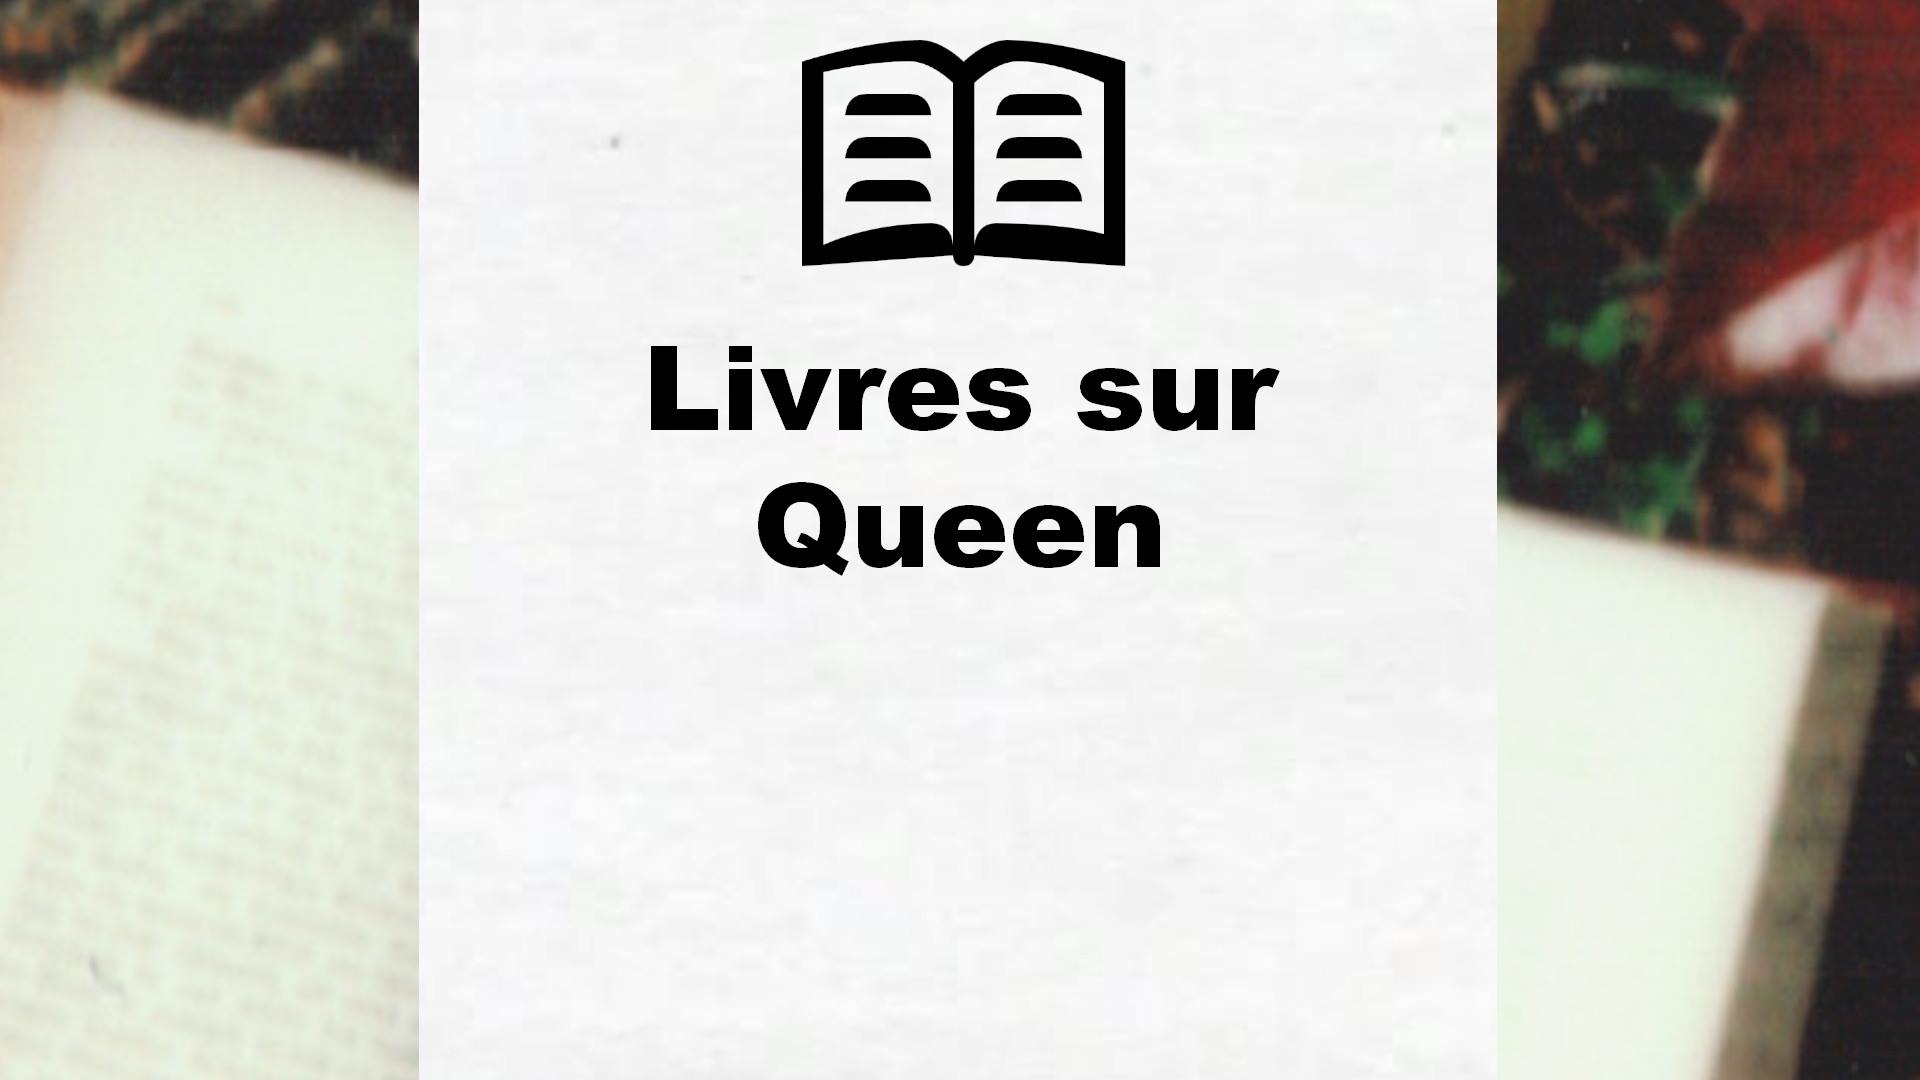 Livres sur Queen